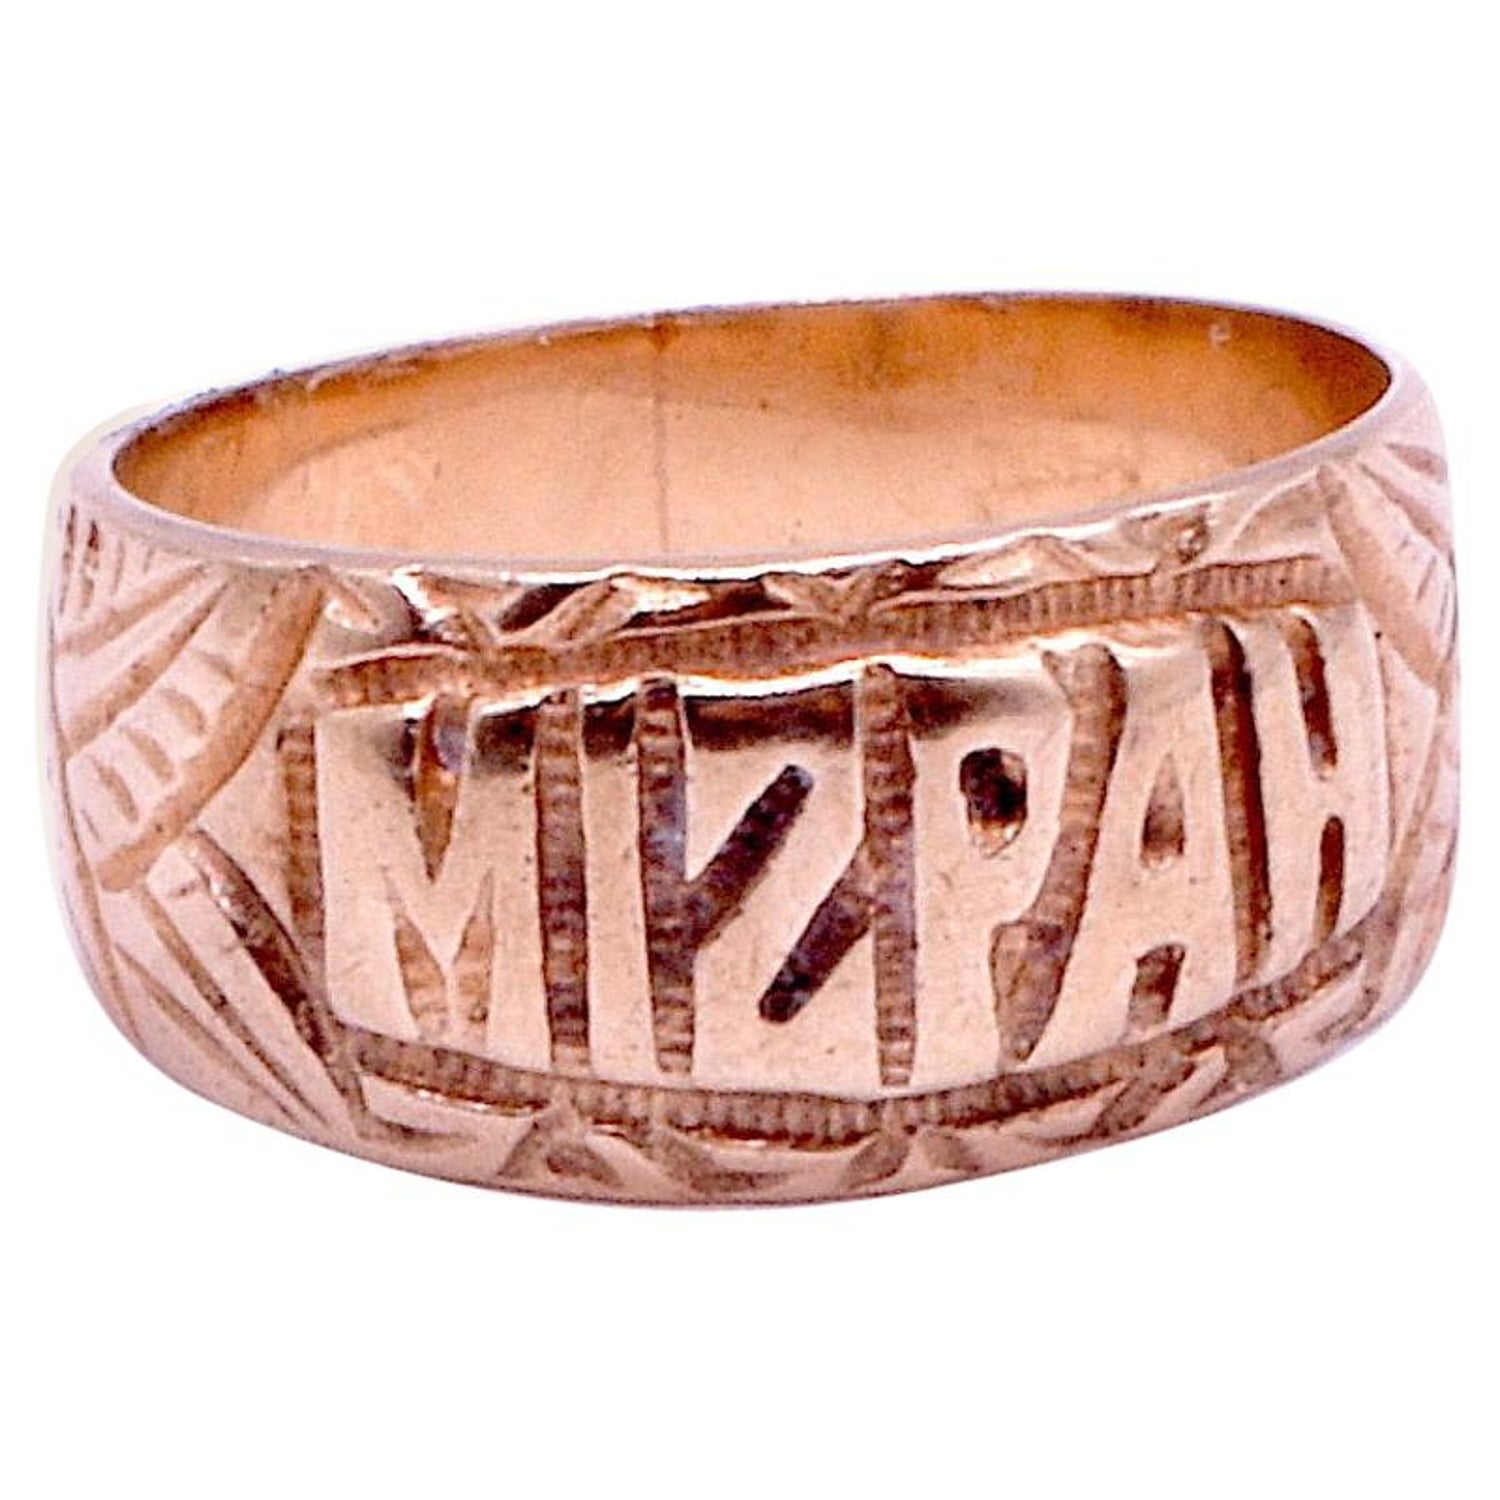 Mizpah Ring - 6 For Sale on 1stDibs | mizpah ring value, mizpah rings for  sale, mizpah ring for sale